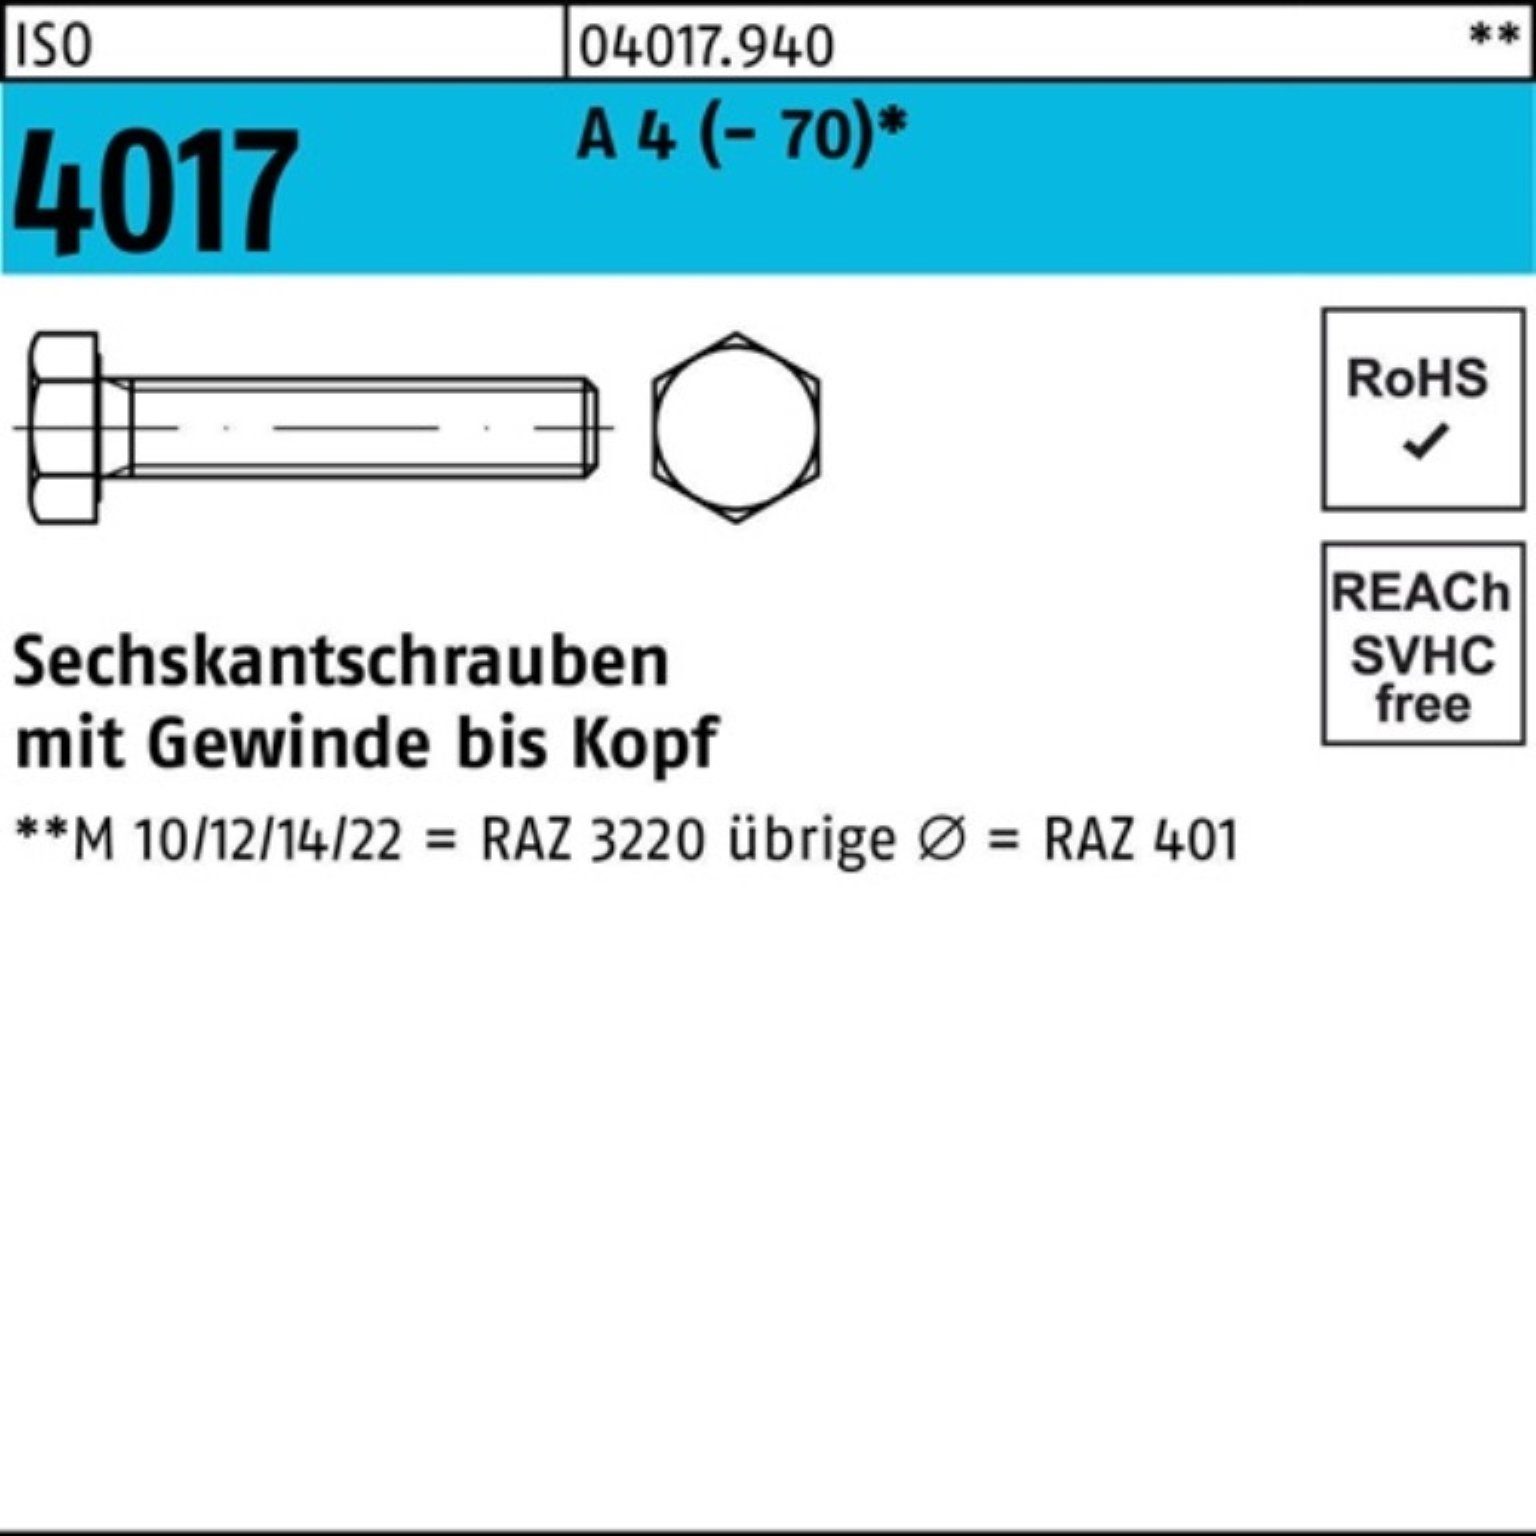 Bufab Sechskantschraube 100er Pack Sechskantschraube ISO 4017 VG M12x 190 A 4 (70) 1 Stück